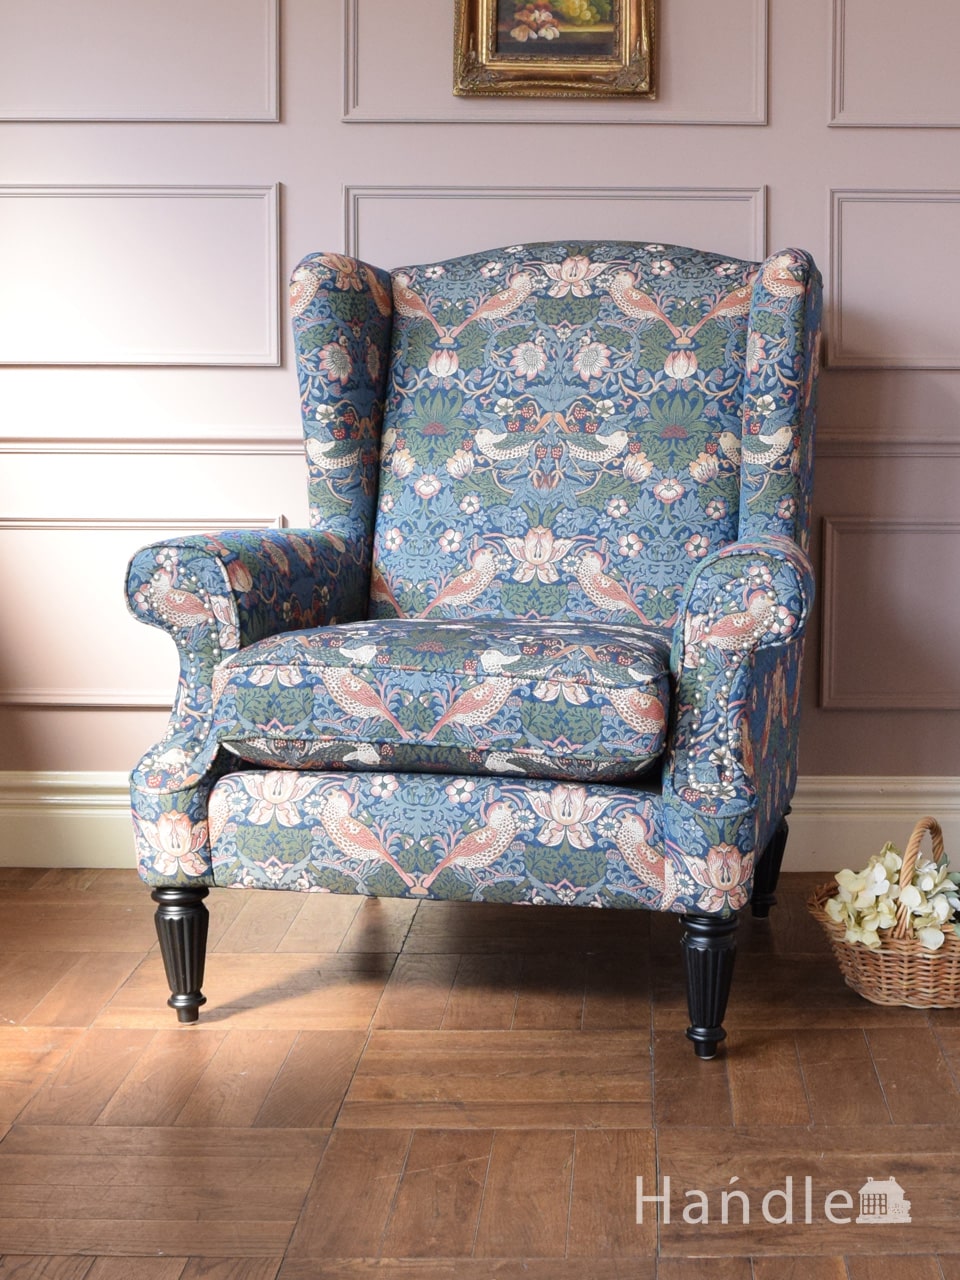 アンティーク風の一人掛け椅子、ウィリアムモリス風の張地がおしゃれなジェニファーテイラーのアームチェア (y-563-c)